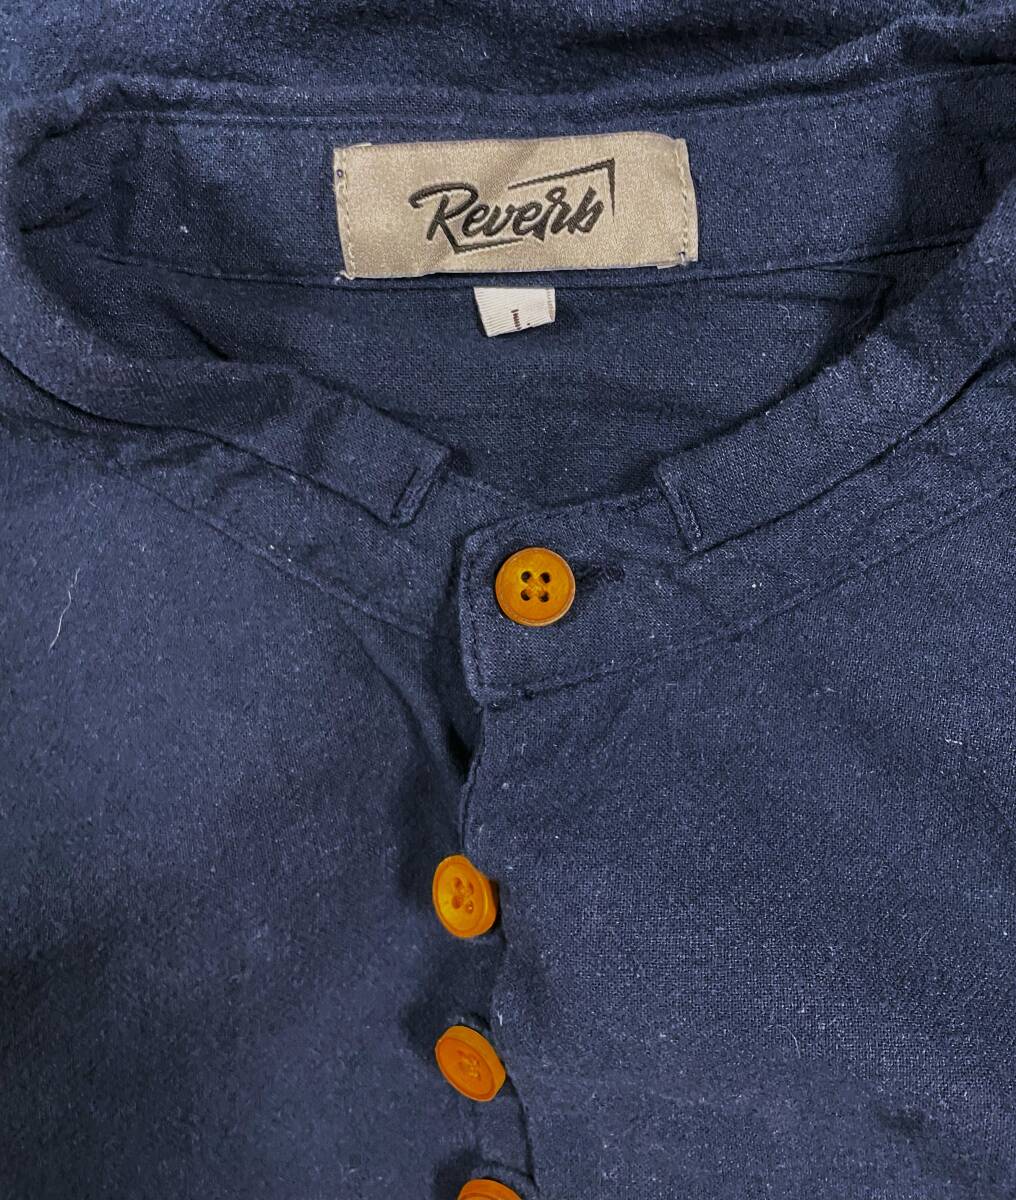 E-1242 本場アメカジ輸入古着シャツ REVETH ネイビーの長袖バンドカラー隠れボタンデザインシャツ 腕捲りボタン付き L (US-FIT) の画像4